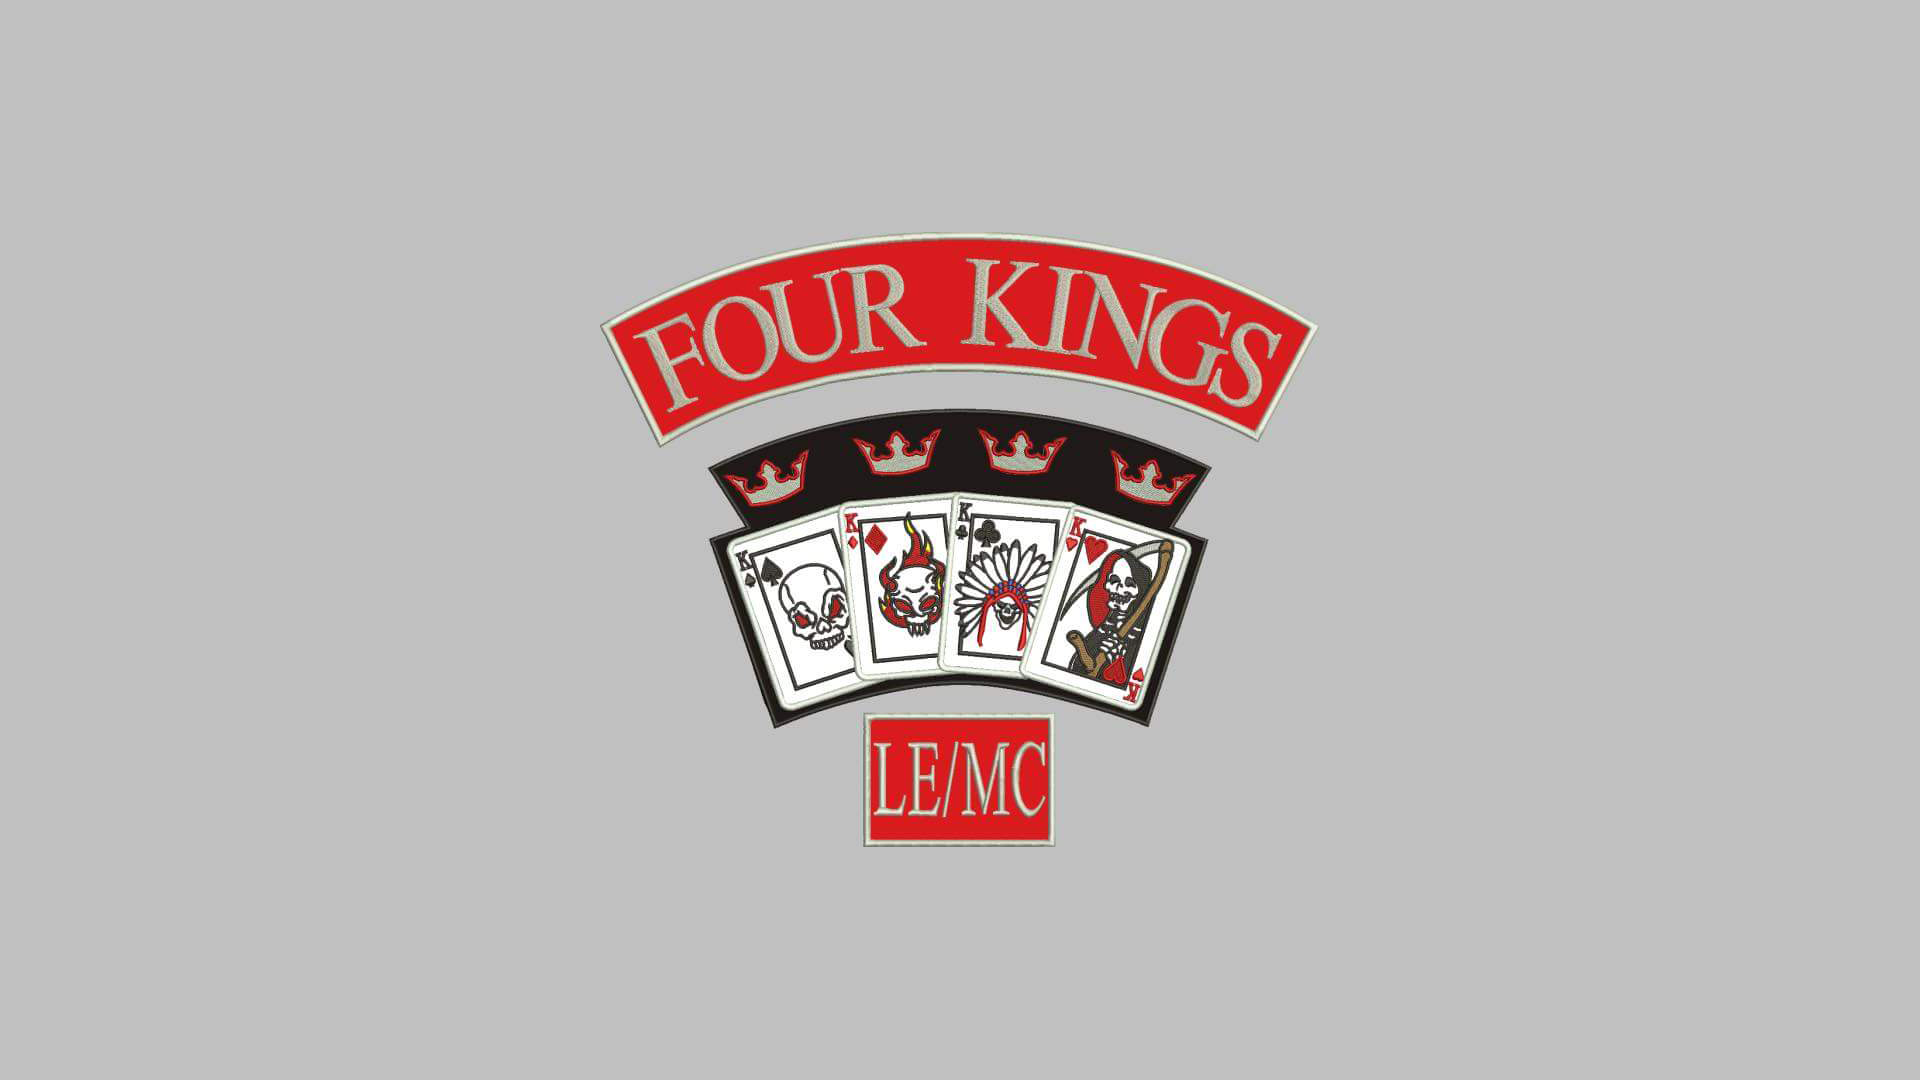 Four Kings LE/MC